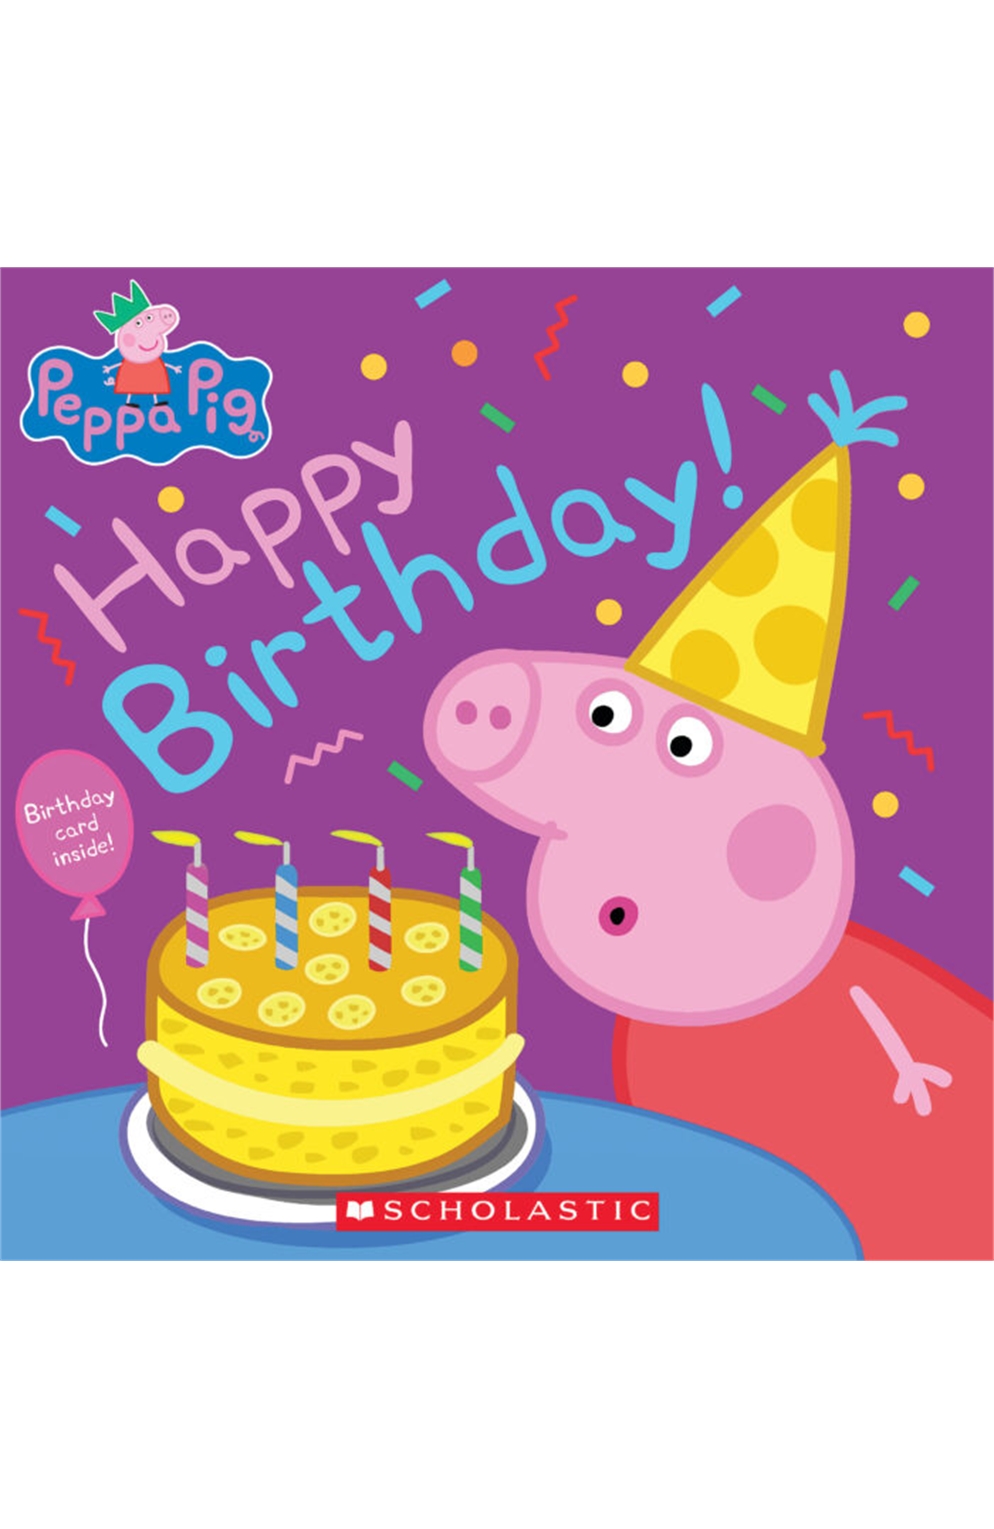 Peppa Pig - Happy Birthday